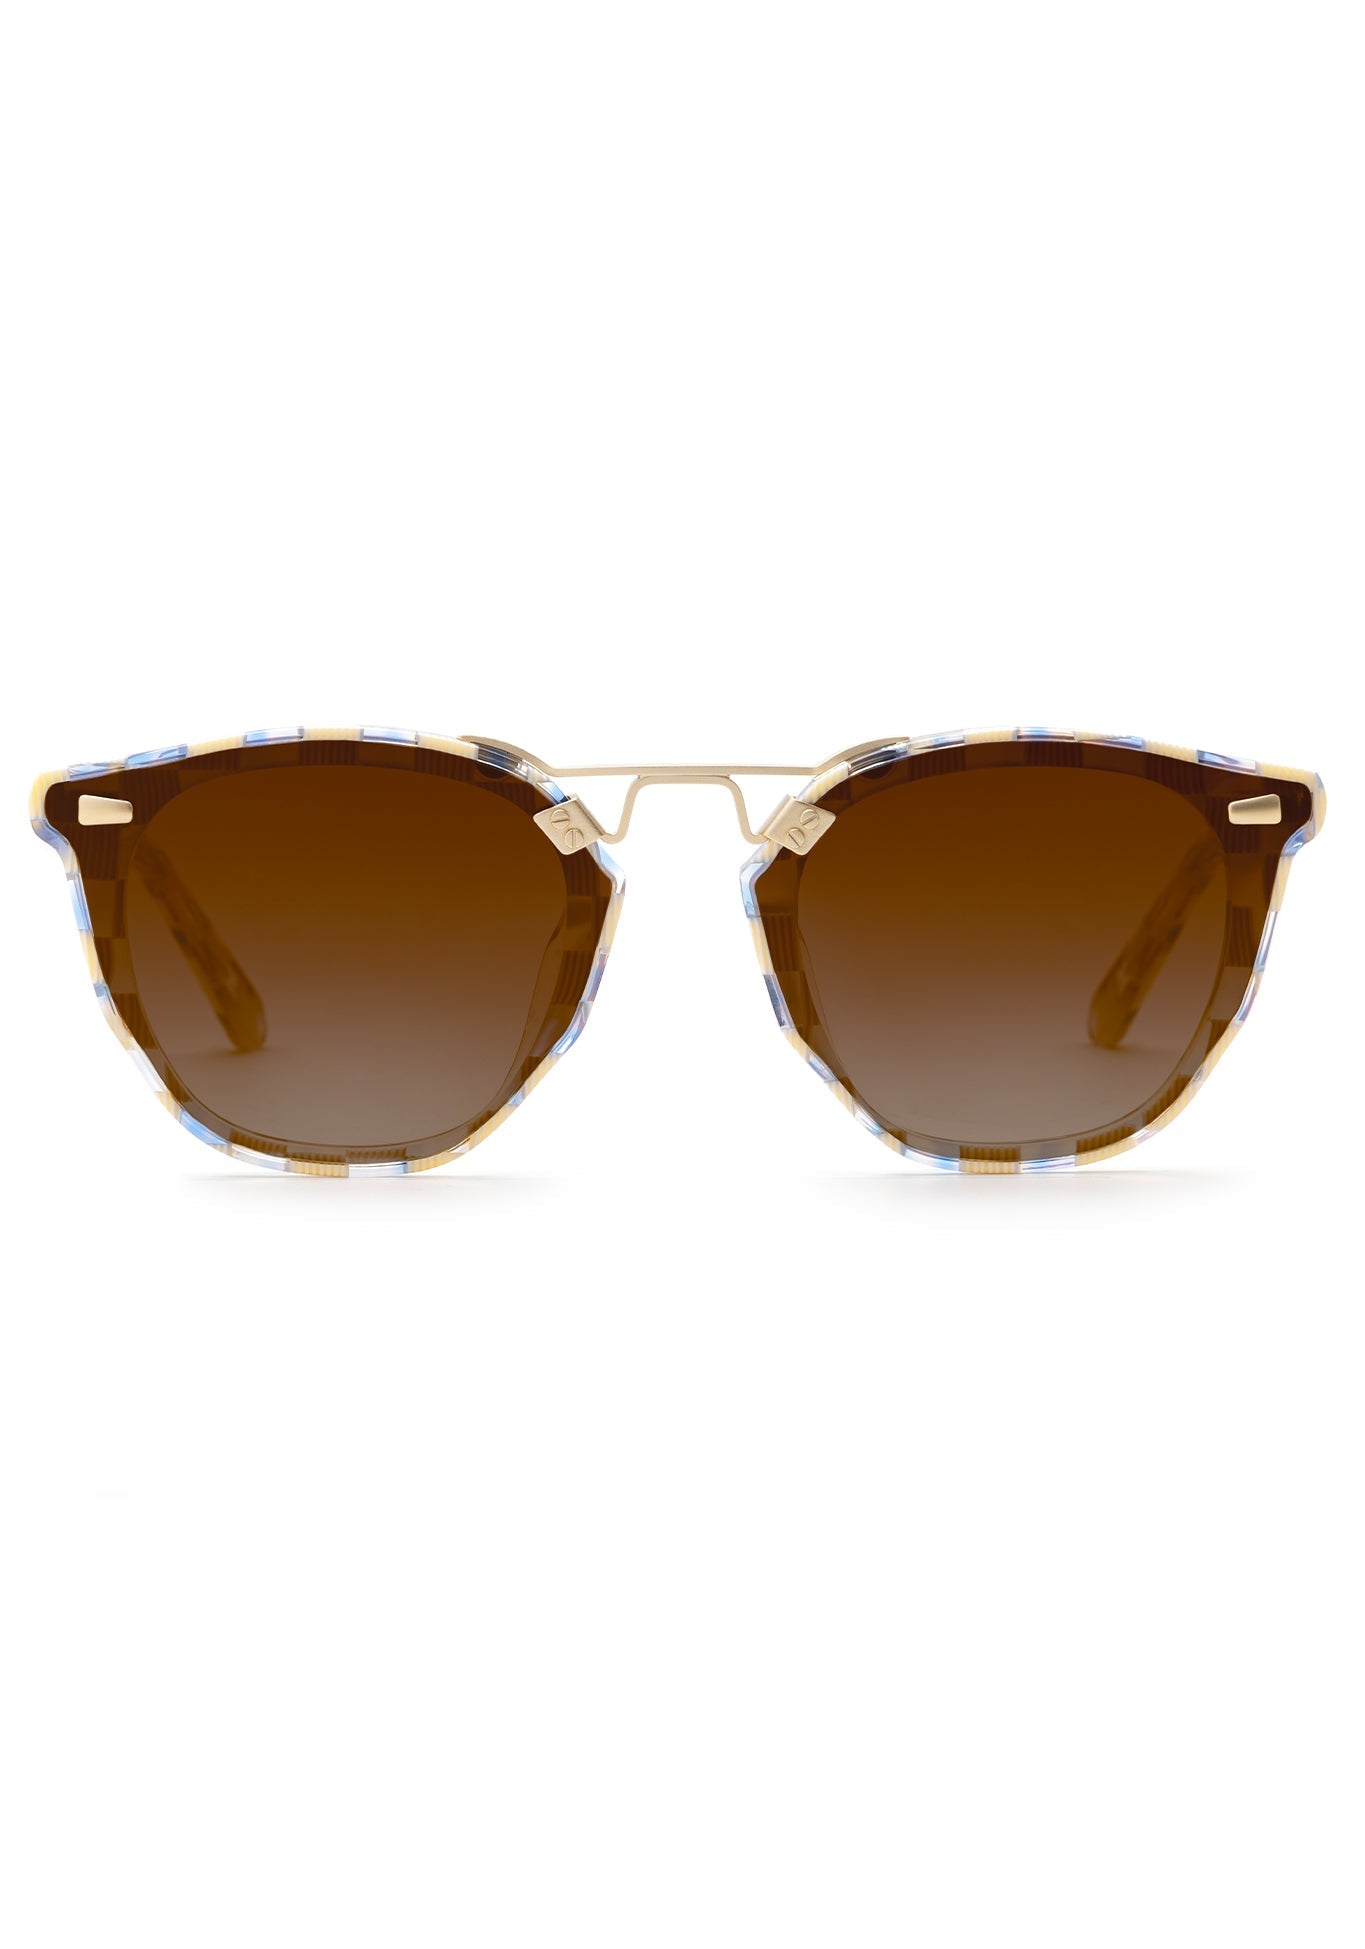 BEAU NYLON | Gingham 12K  Luxury Blue and White Acetate Sunglasses